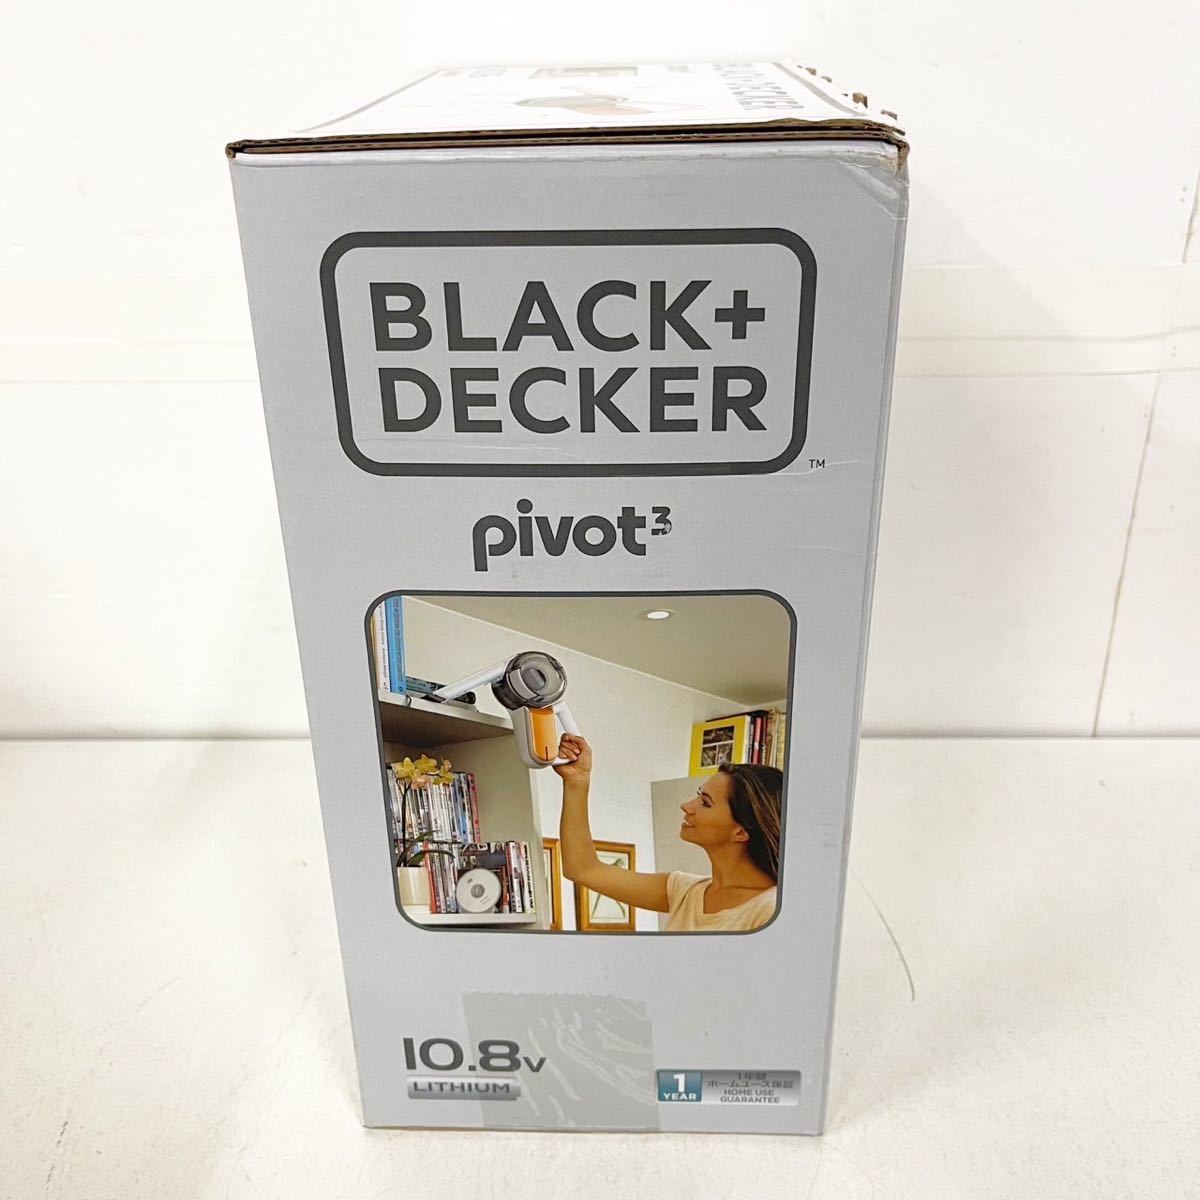 開封済/未使用 ブラックデッカー BLACK+DECKER ピボット pivot3 10.8v ハンディクリーナー 掃除機 お掃除 小型【NK4128】 _画像2